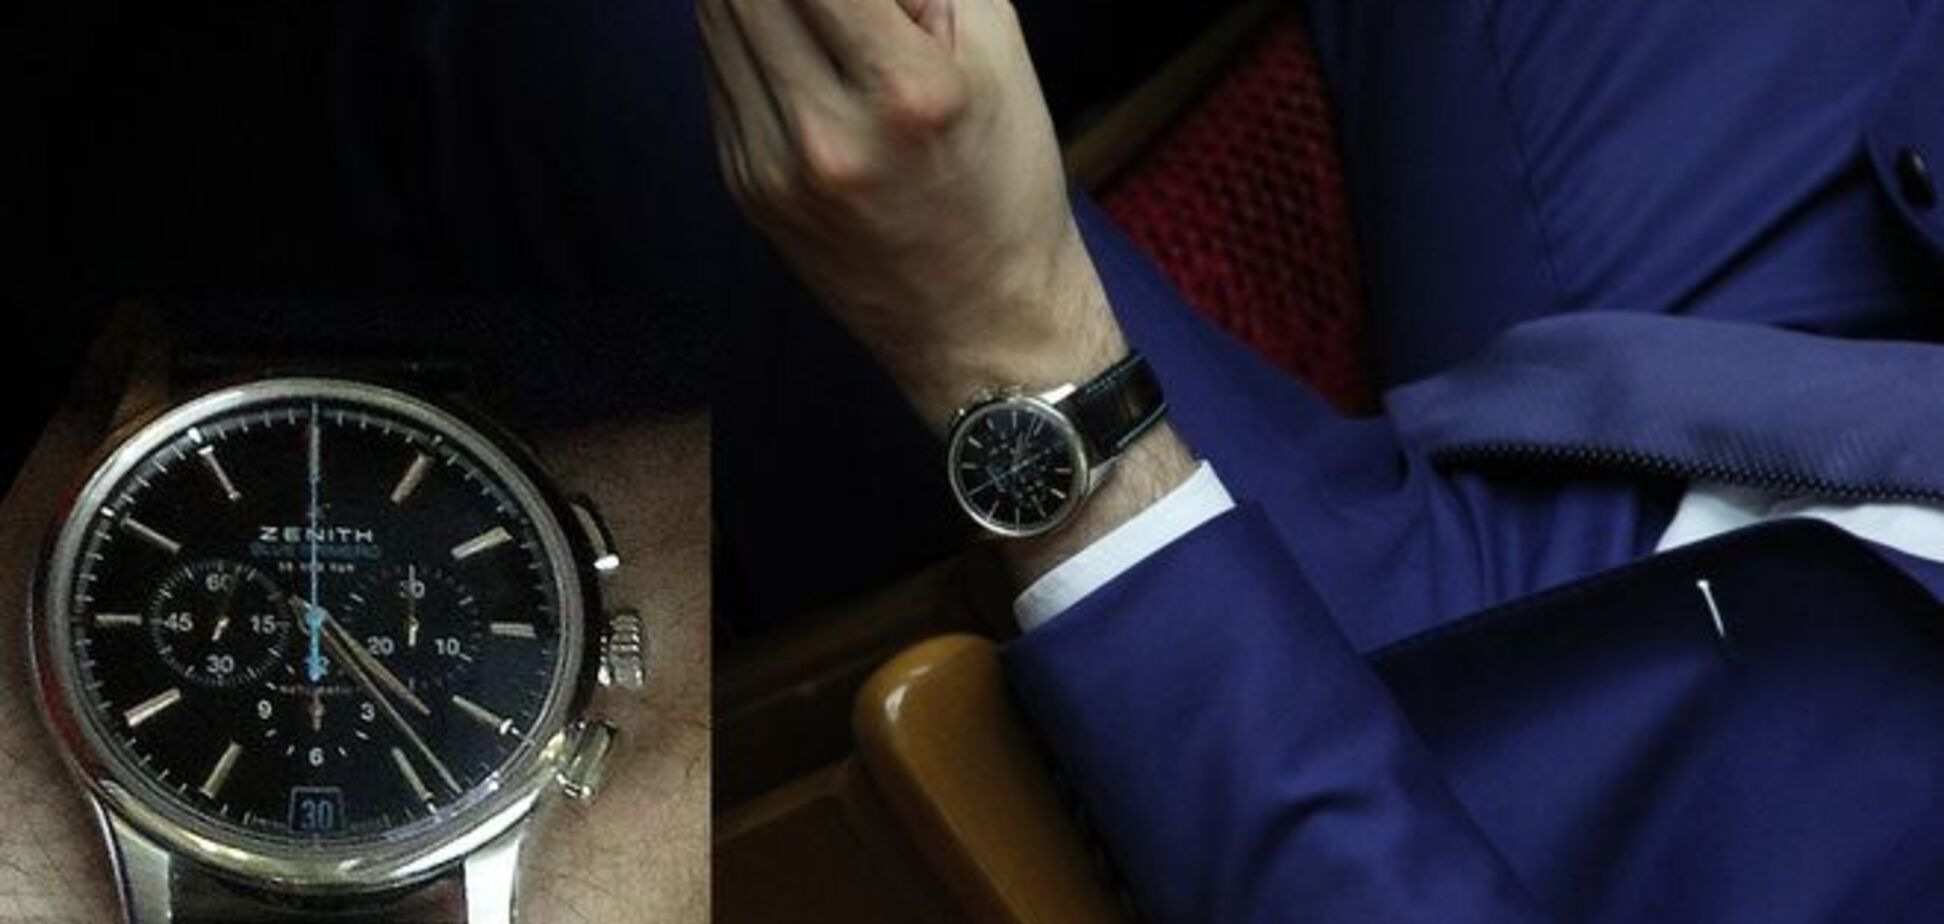 Заступник генпрокурора Сакварелідзе 'засвітив' годинник за 120 тисяч: фотофакт